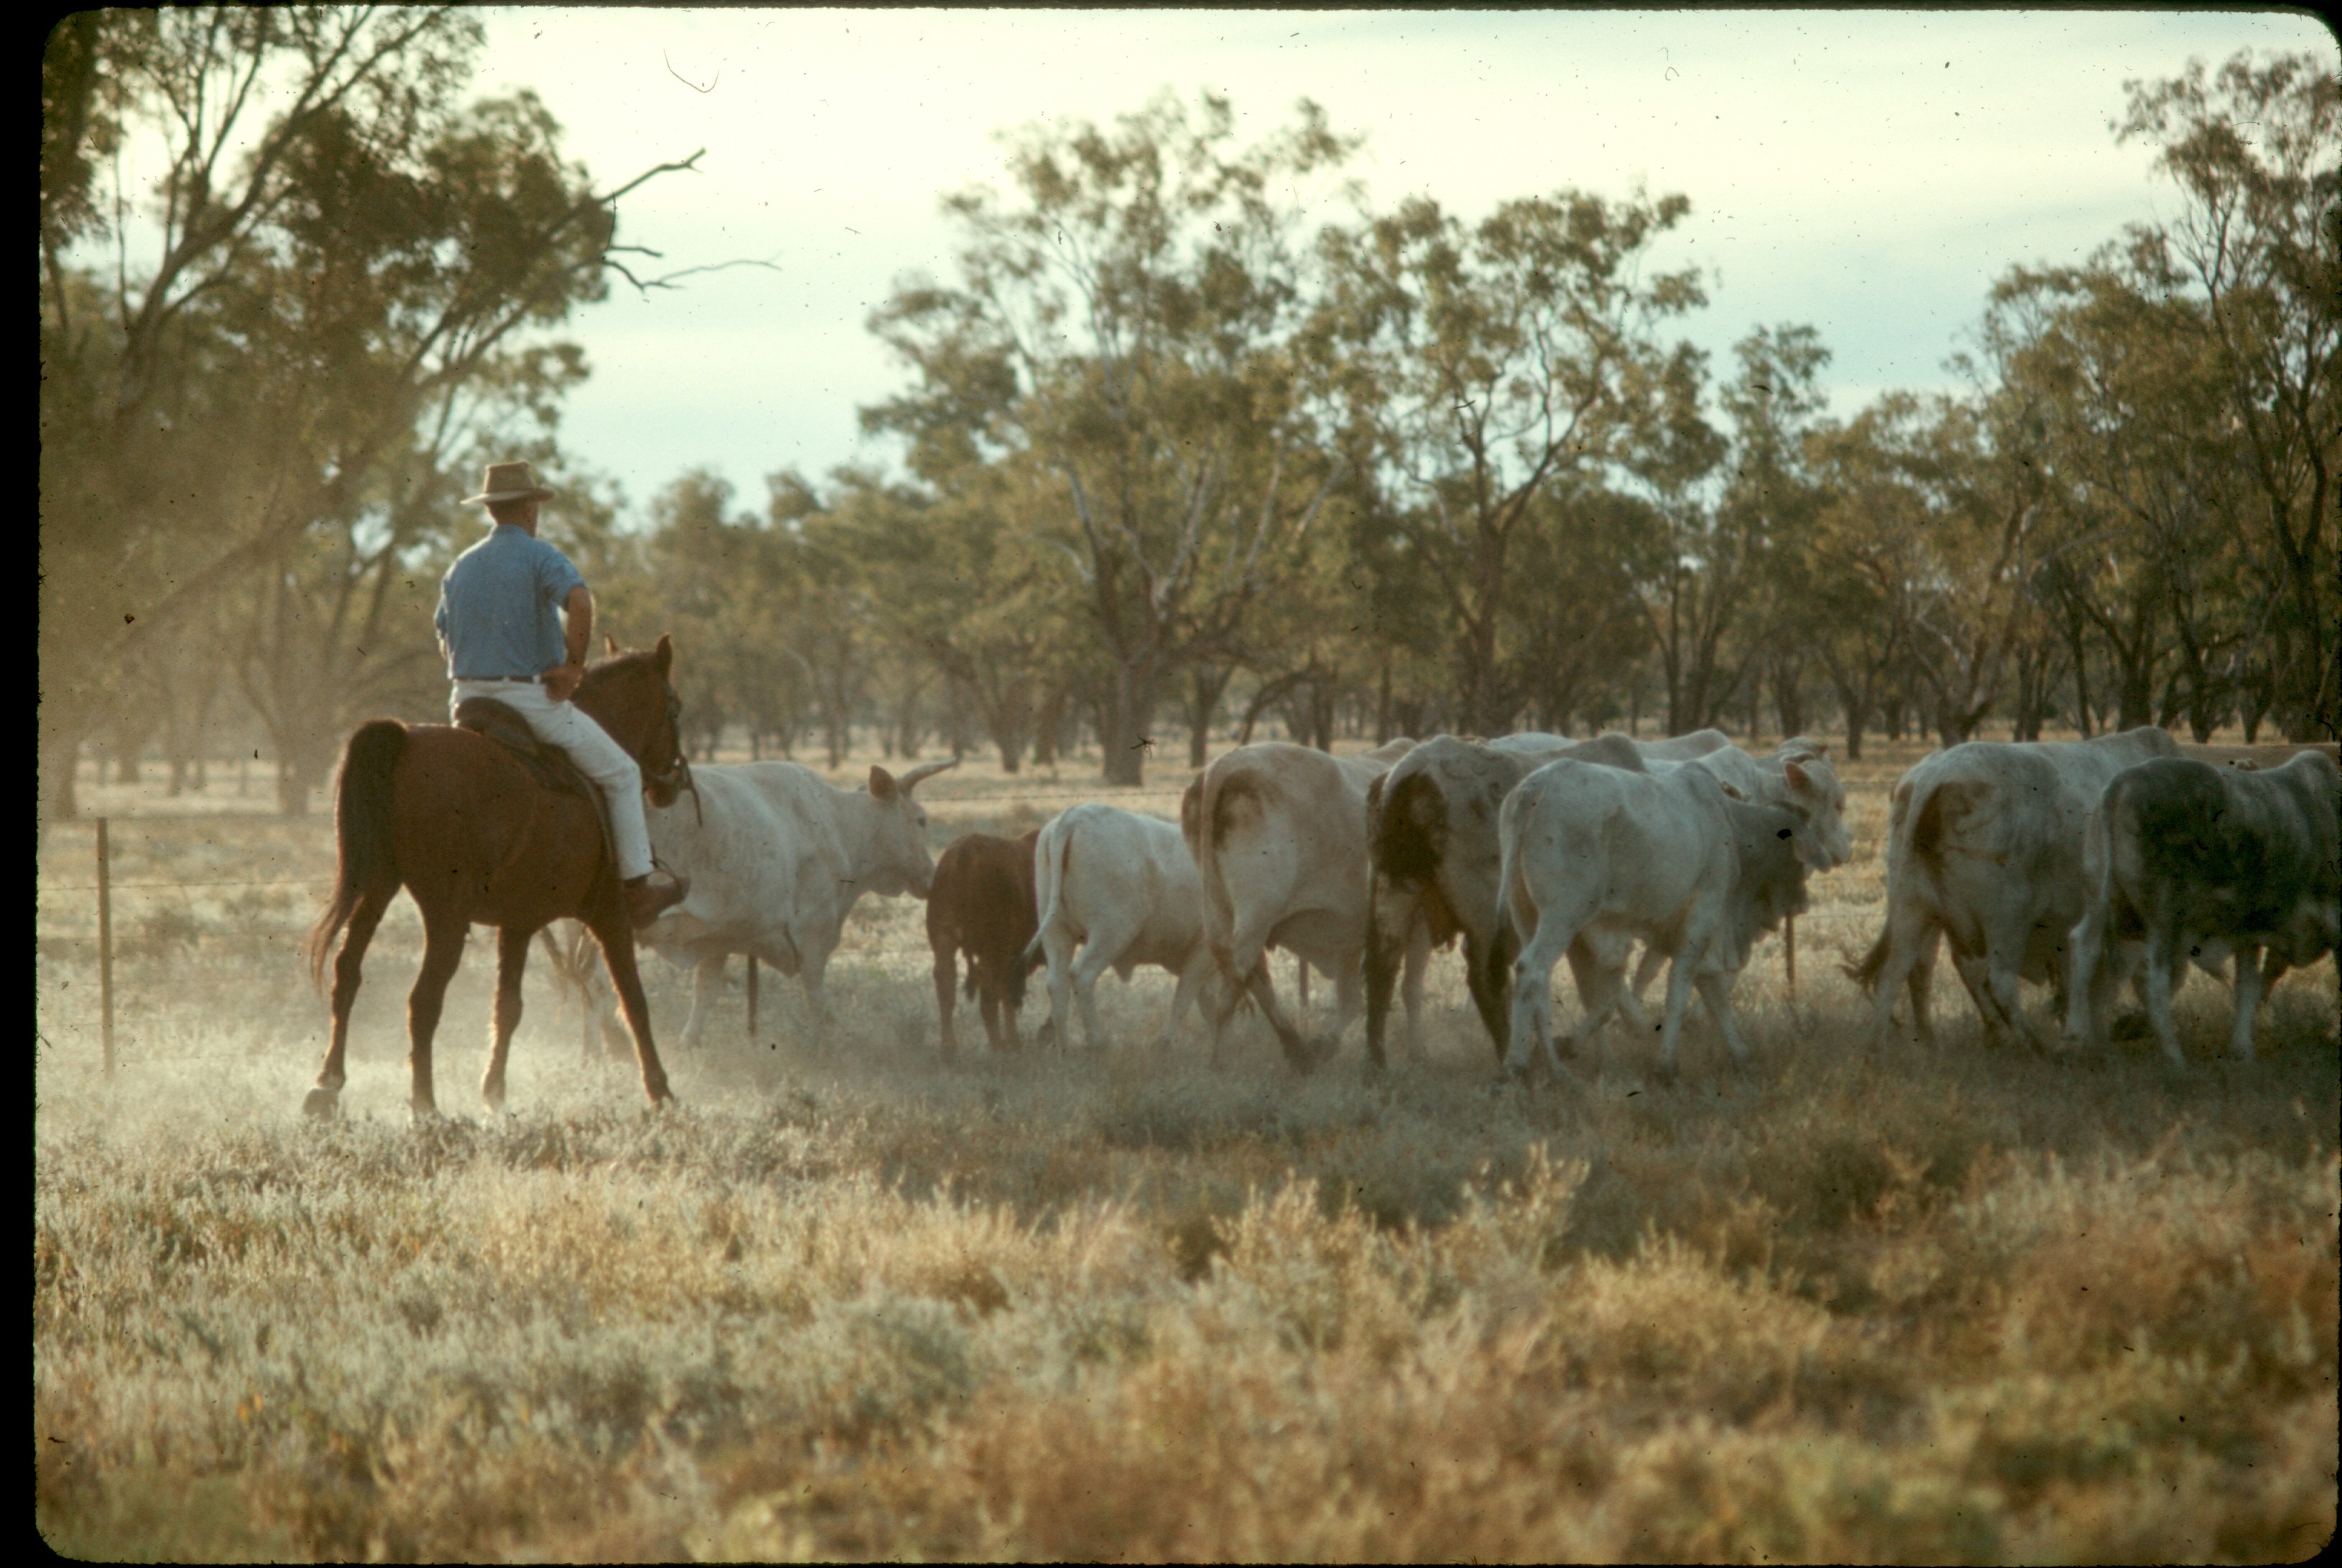 ss 043 1970 06 18 herding cattle on property in australia